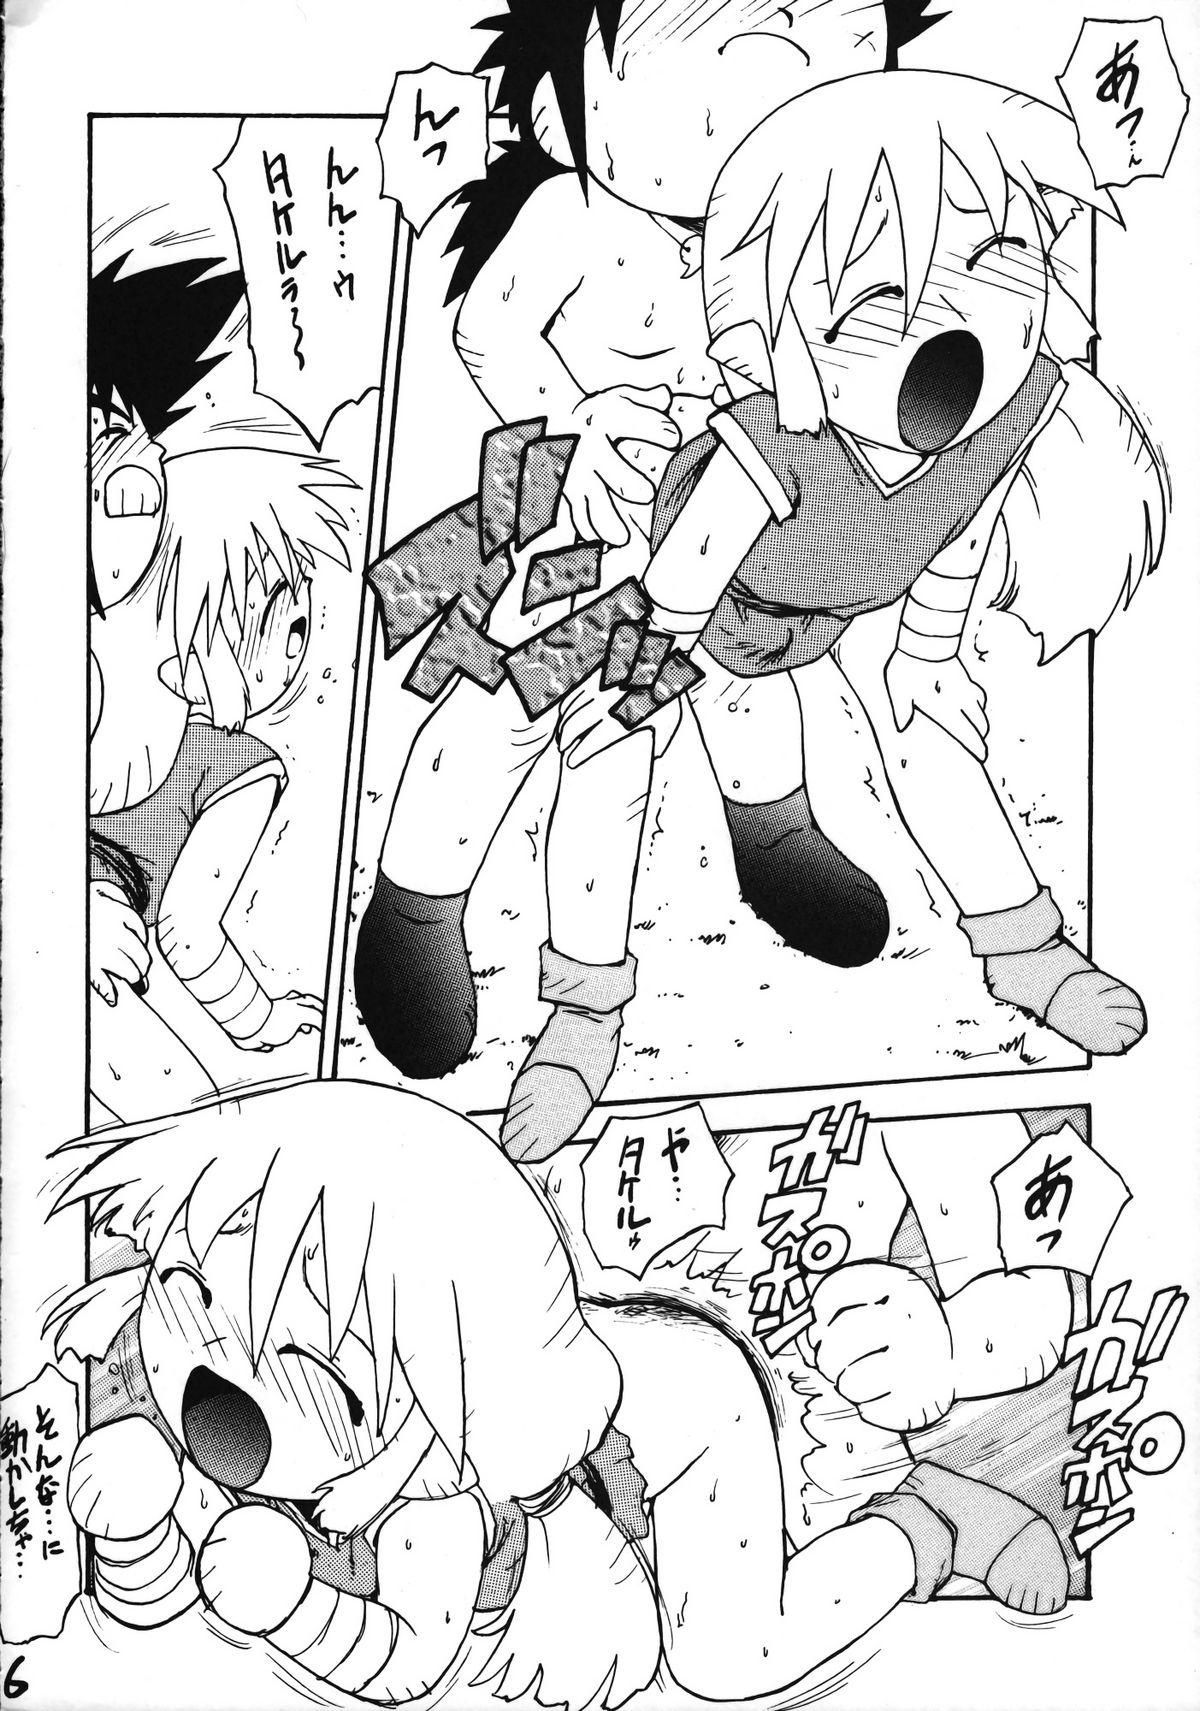 Horny Ikenai! Otokonoko Hon Boy's H Book 2 - Samurai spirits Dragon ball z Yamato takeru Love Making - Page 7